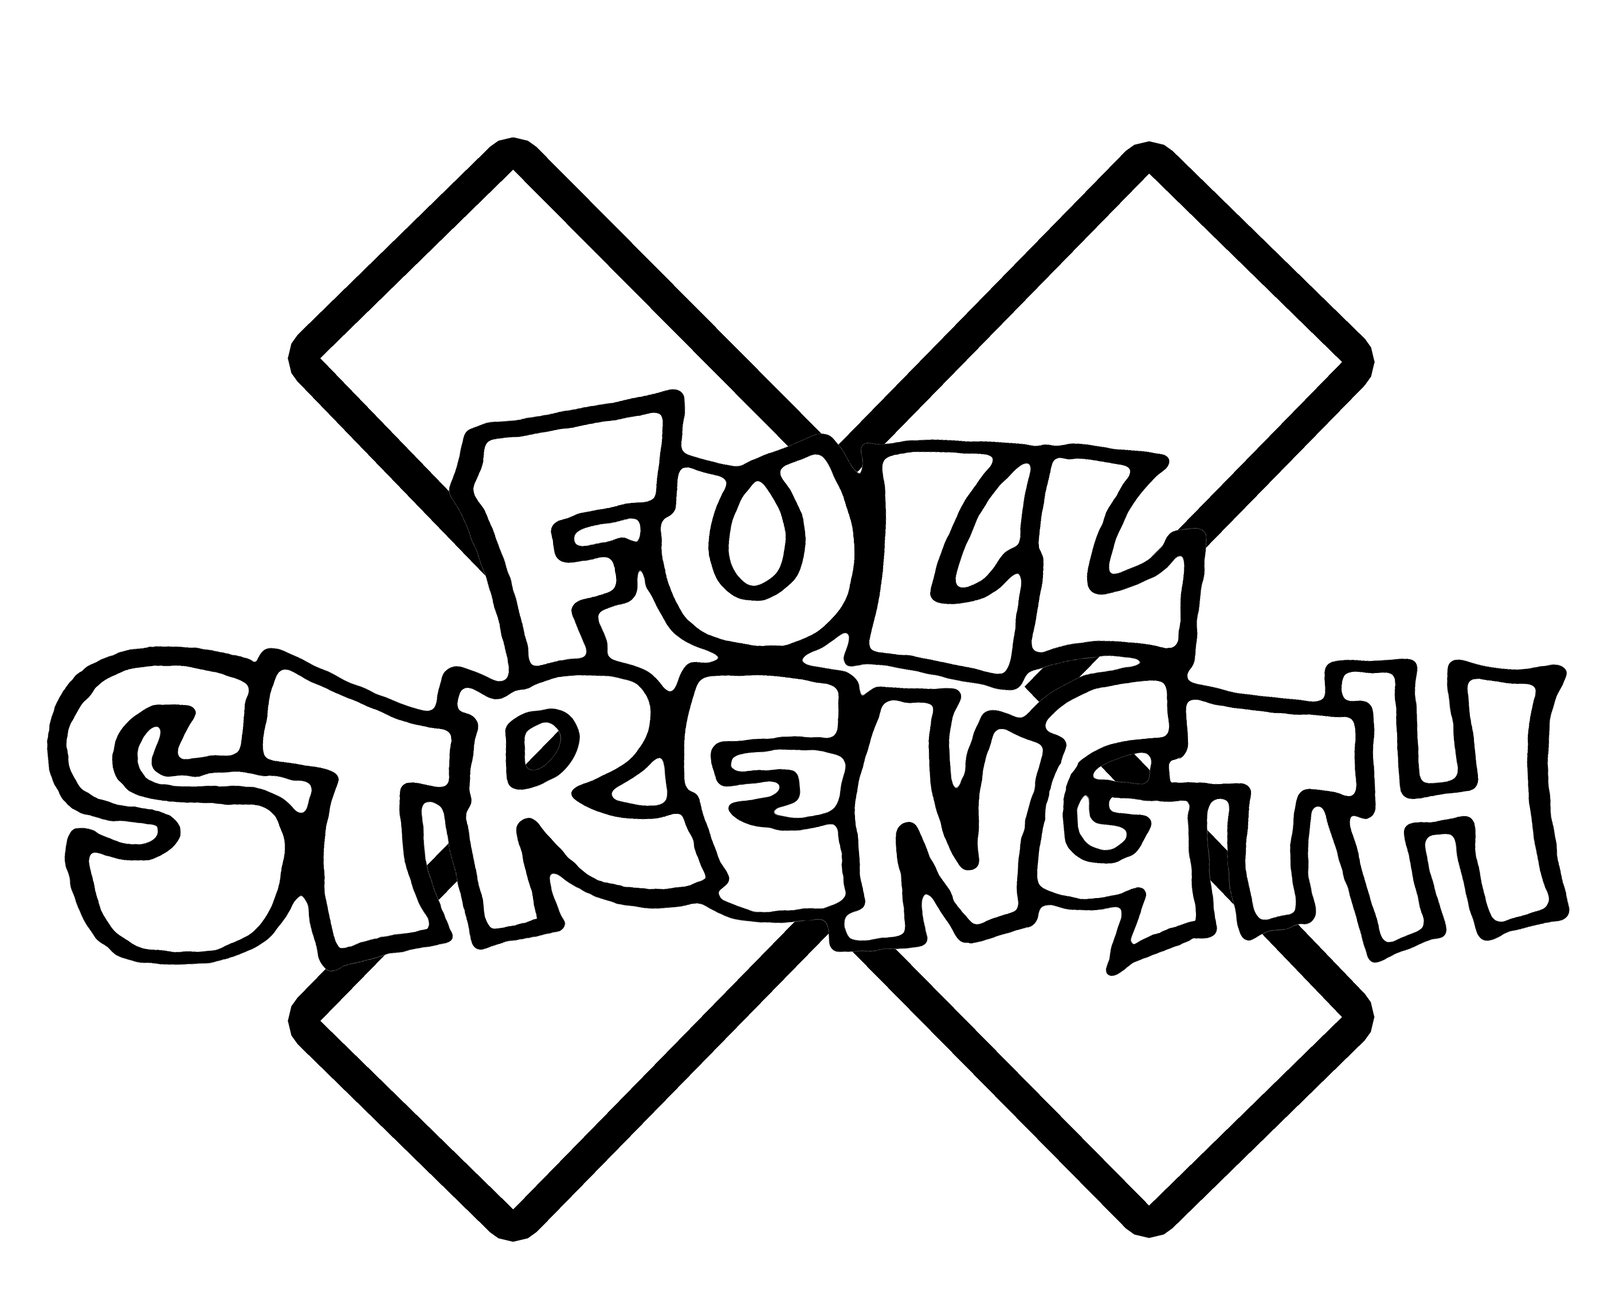 FULL STRENGTH